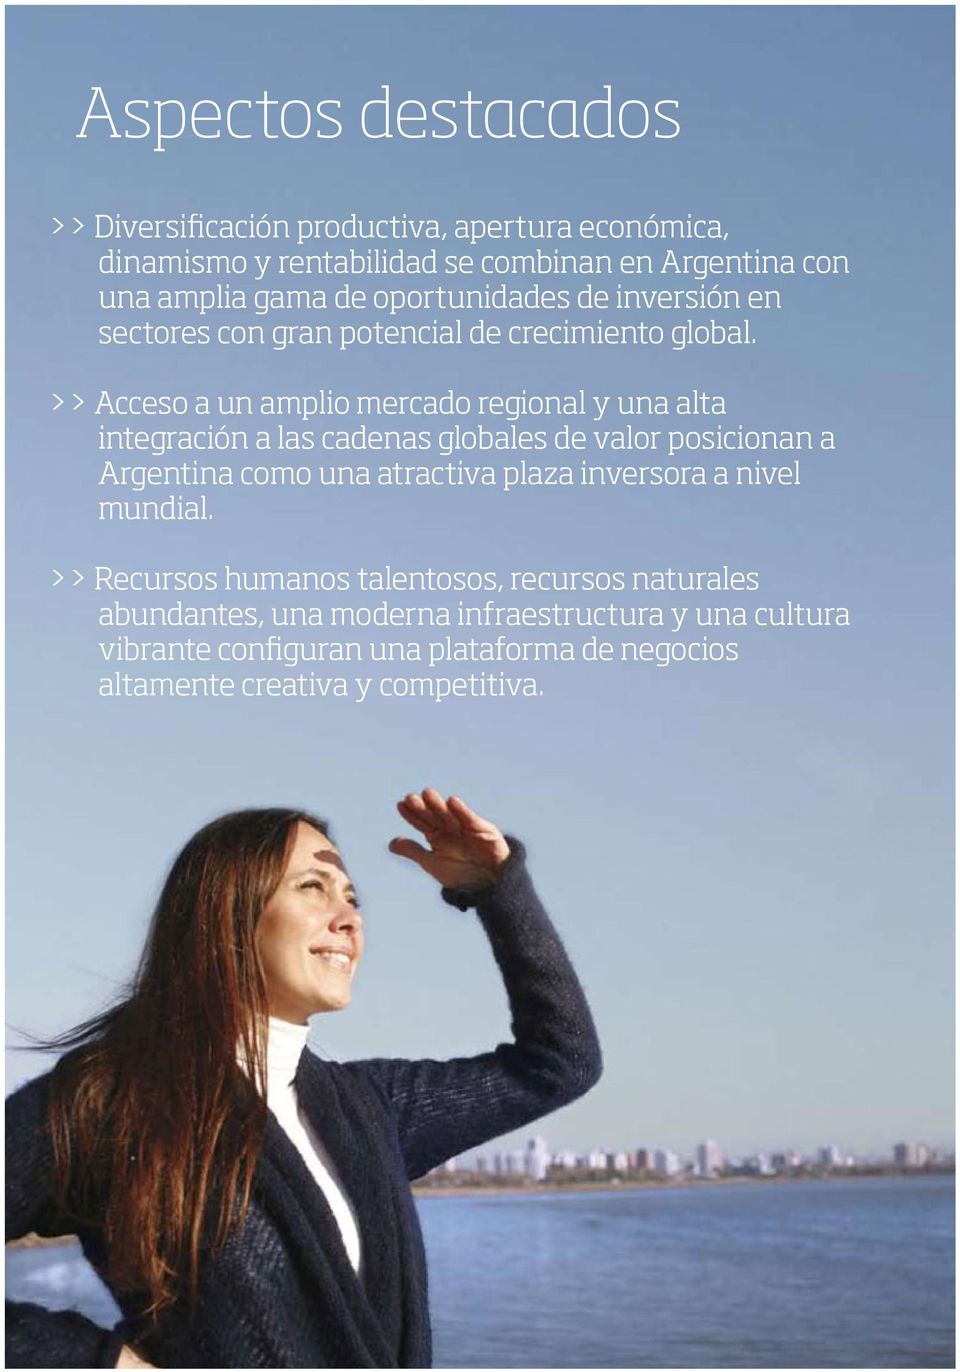 >> Acceso a un amplio mercado regional y una alta integración a las cadenas globales de valor posicionan a Argentina como una atractiva plaza